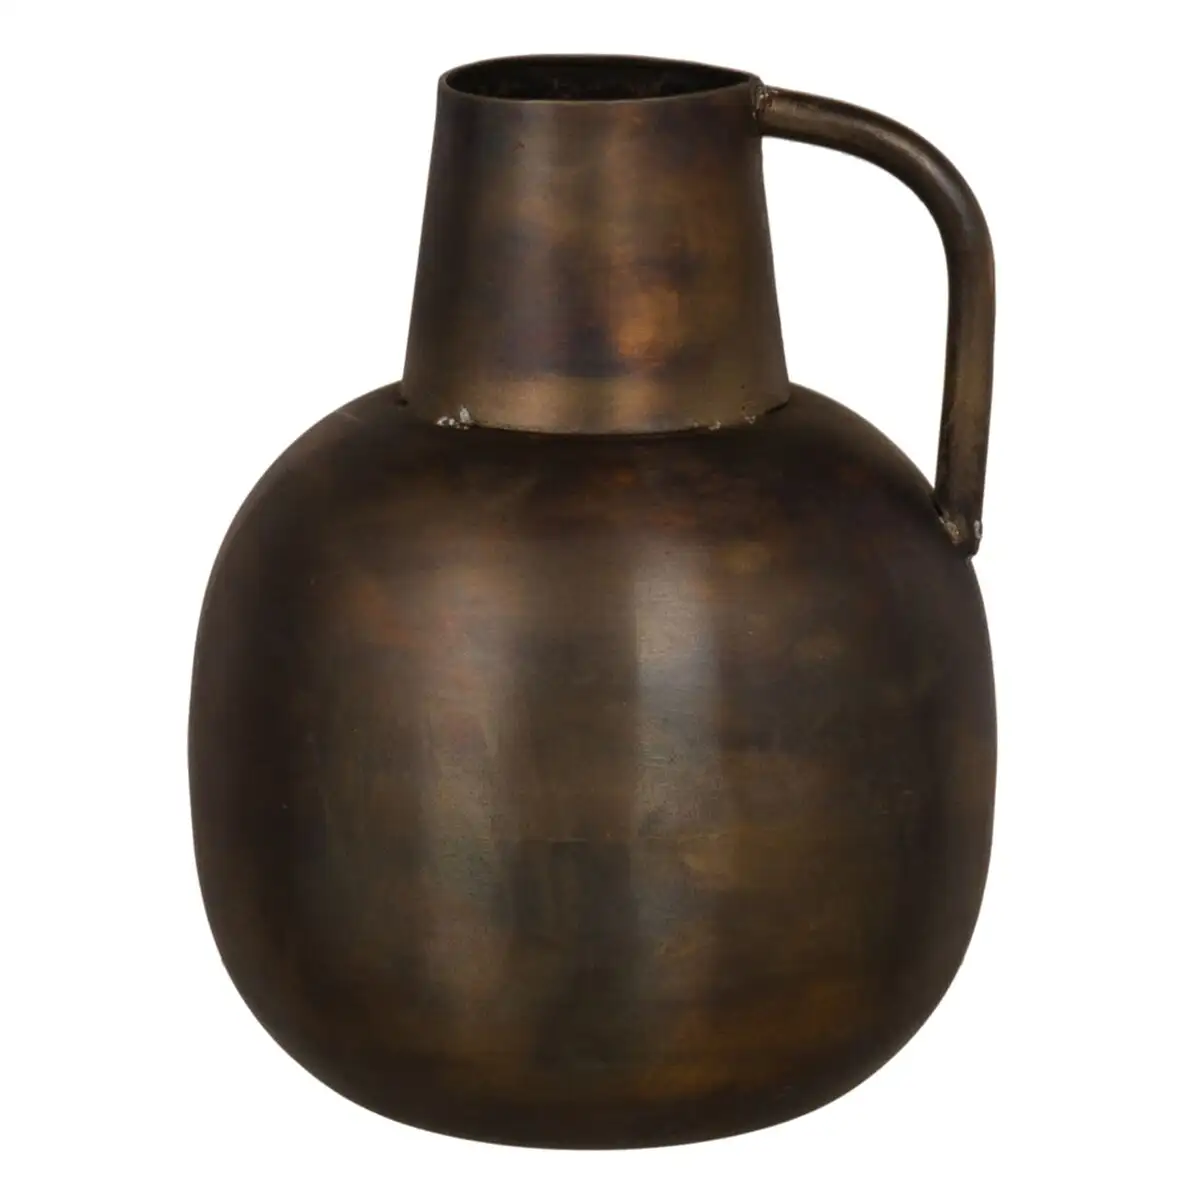 Vase dore metal 15 x 15 x 20 cm_6884. DIAYTAR SENEGAL - Votre Passage vers l'Élégance Abordable. Explorez notre collection où chaque produit est choisi pour sa qualité et son accessibilité, incarnant ainsi l'essence du Sénégal.